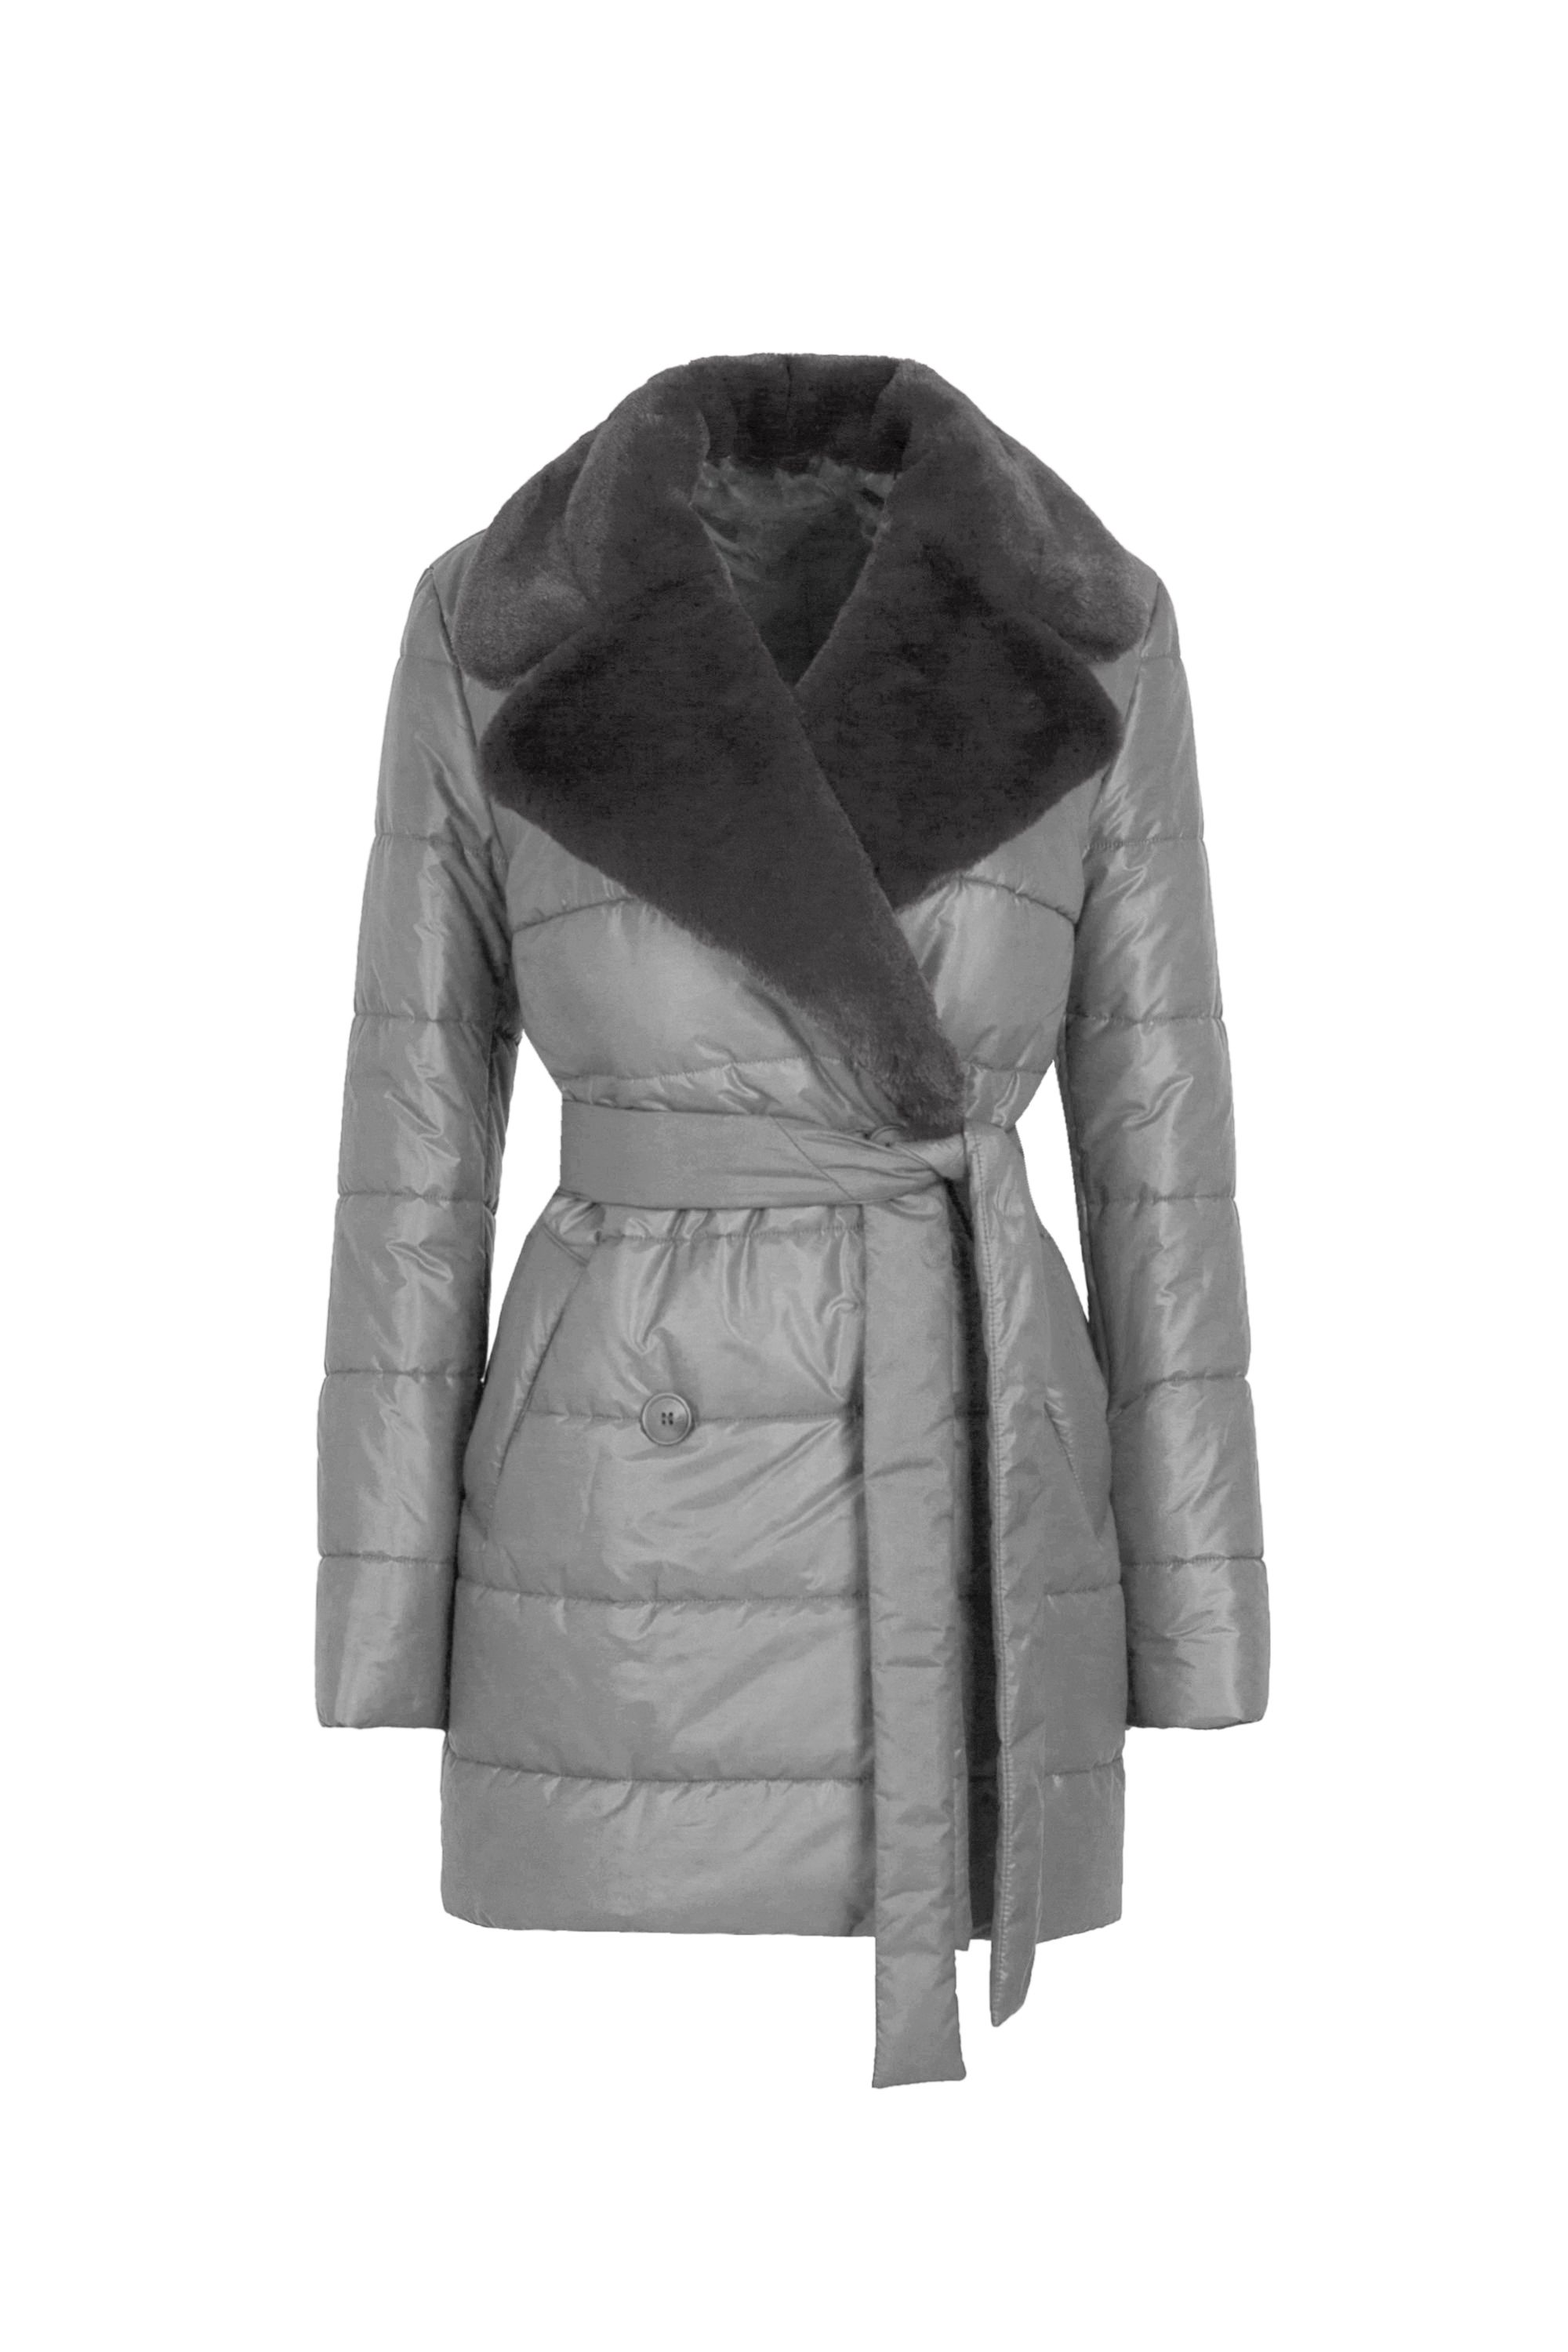 Пальто женское плащевое утепленное 5S-13037-1. Фото 4.